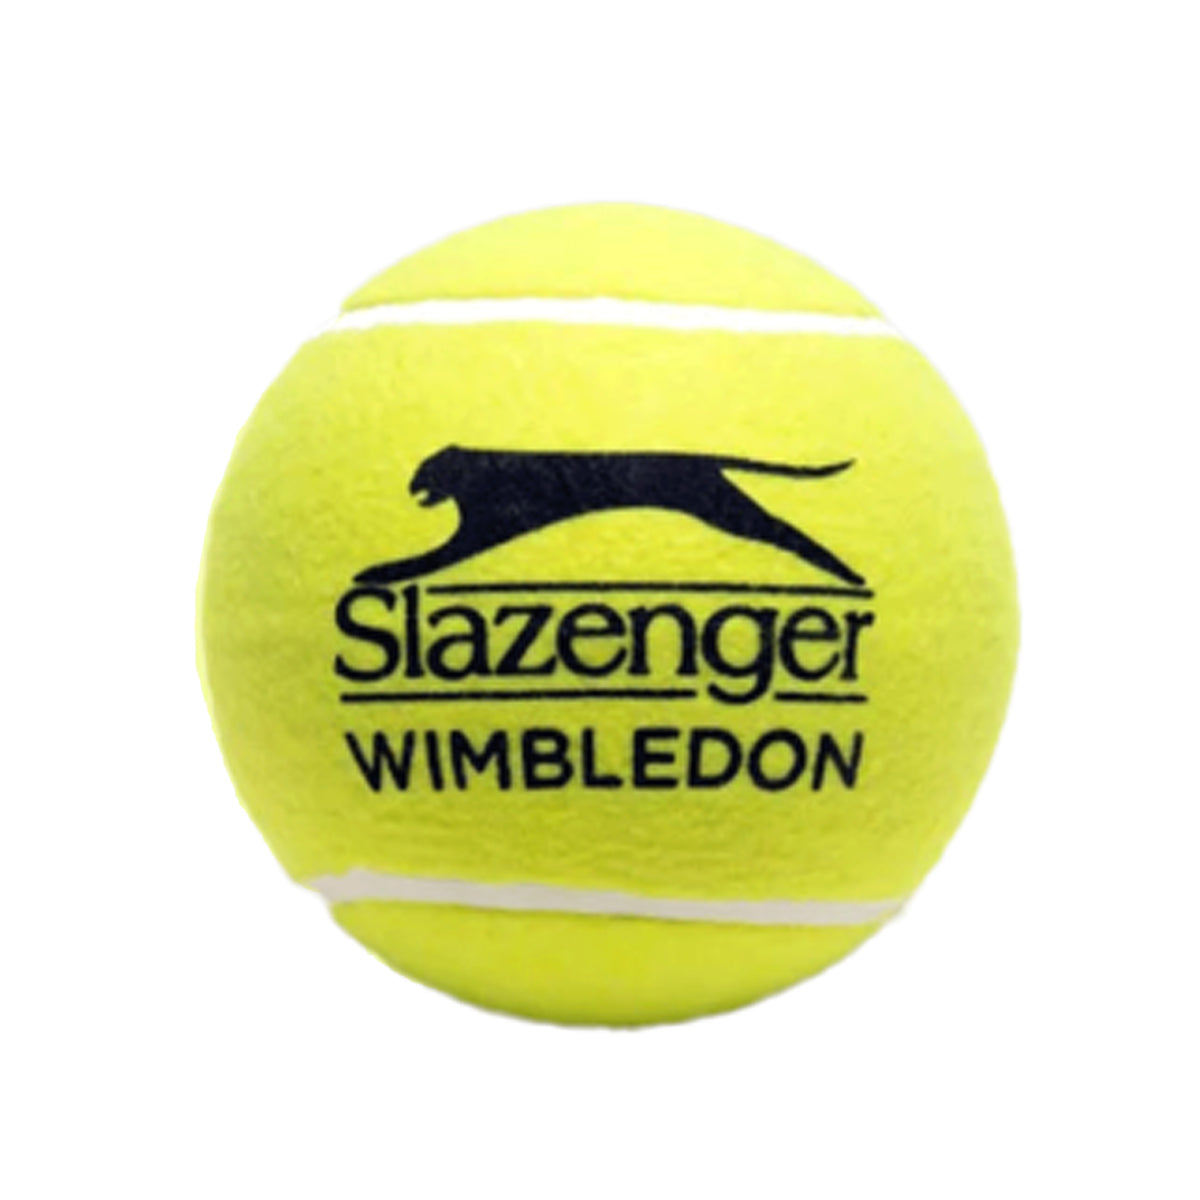 Slazenger Wimbledon Tennis Balls - 4 Ball Can